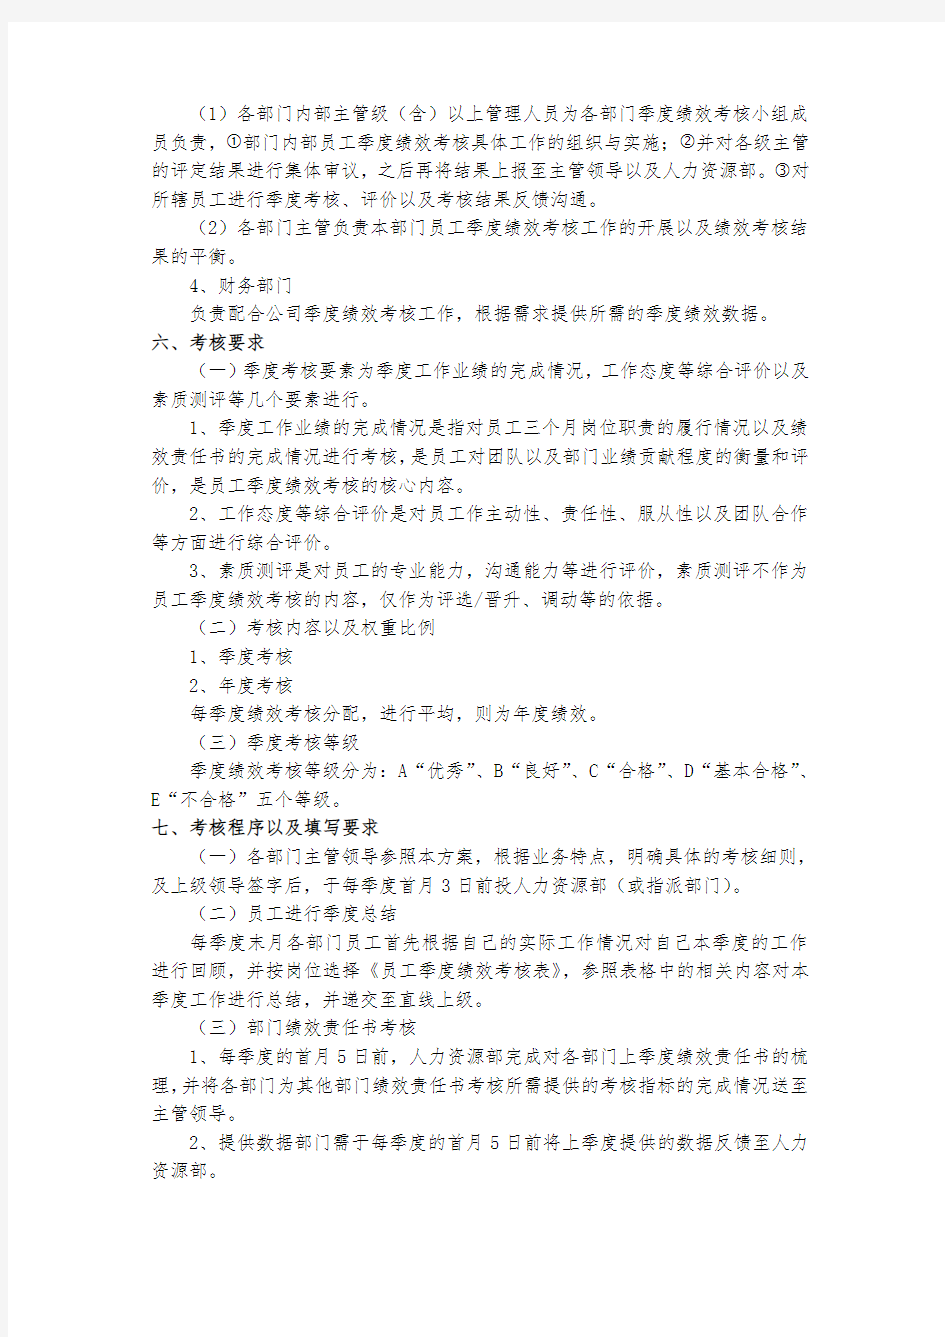 【实用文档】绩效考核制度.pdf